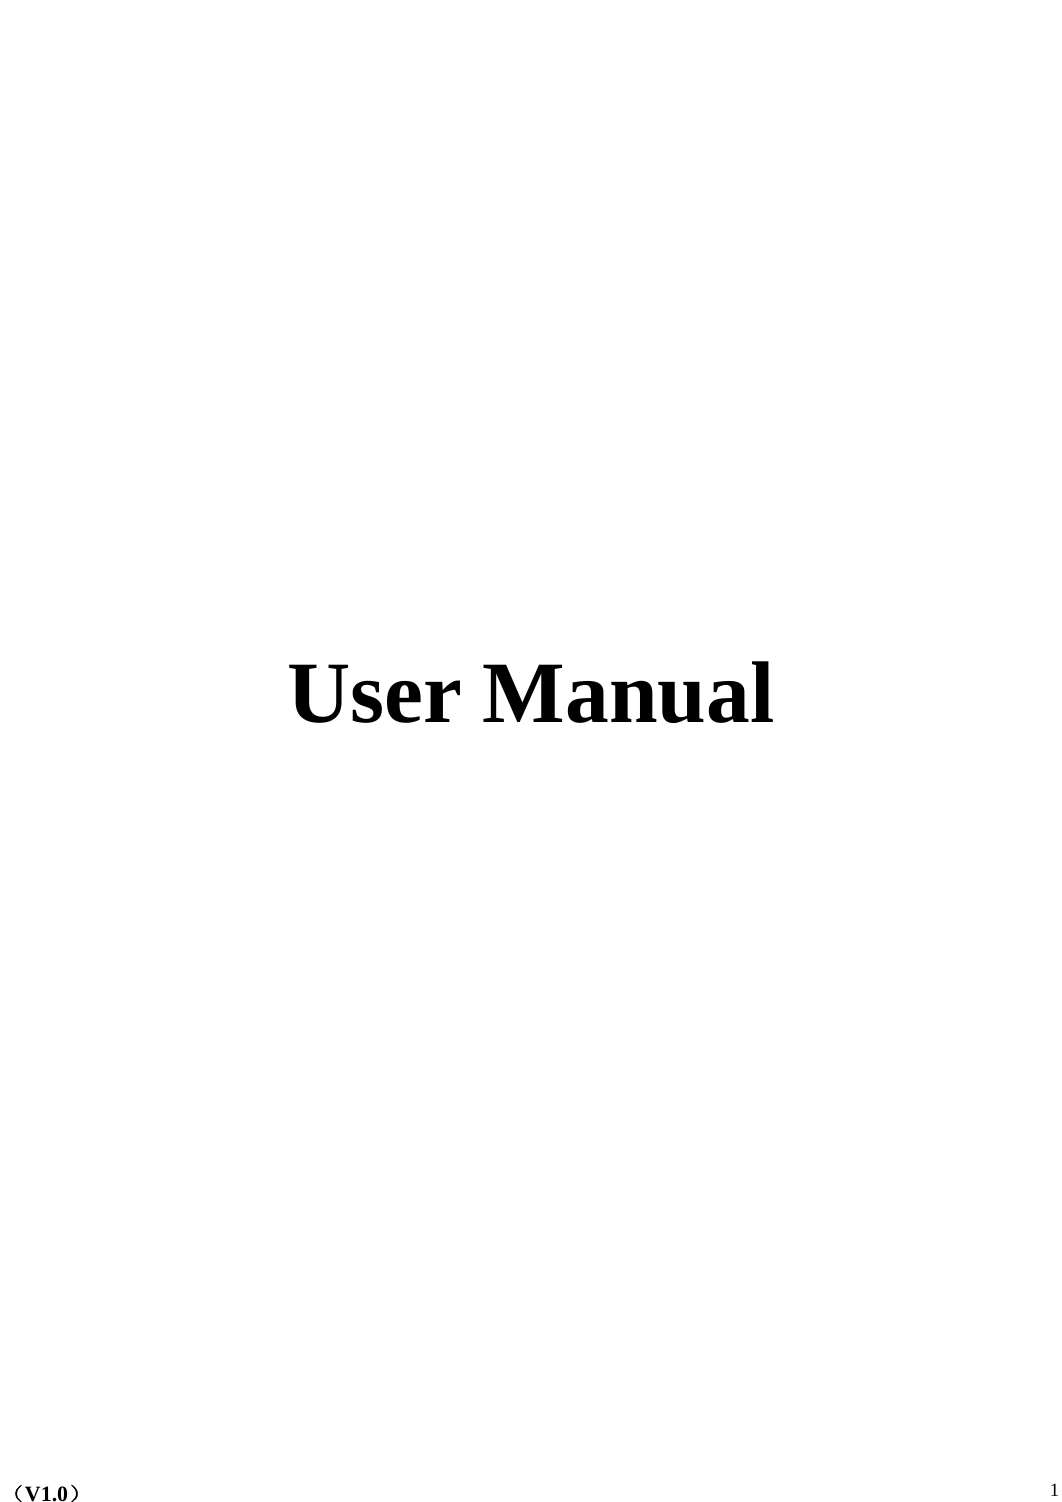    （V1.0）  1      User Manual          